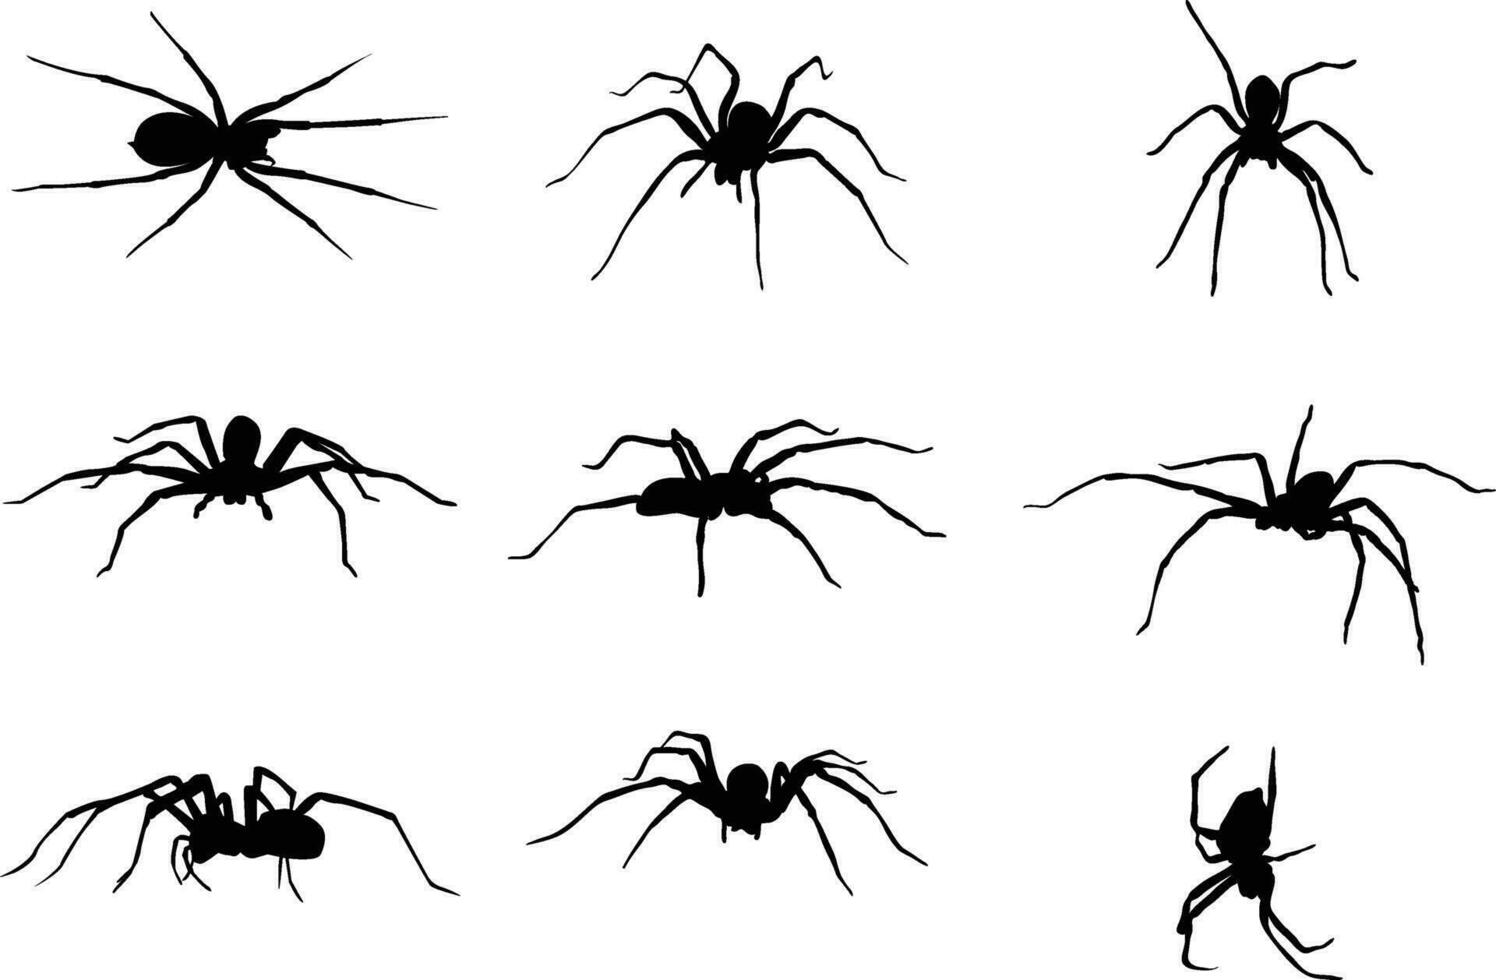 en samling av spindlar i olika positioner vektor